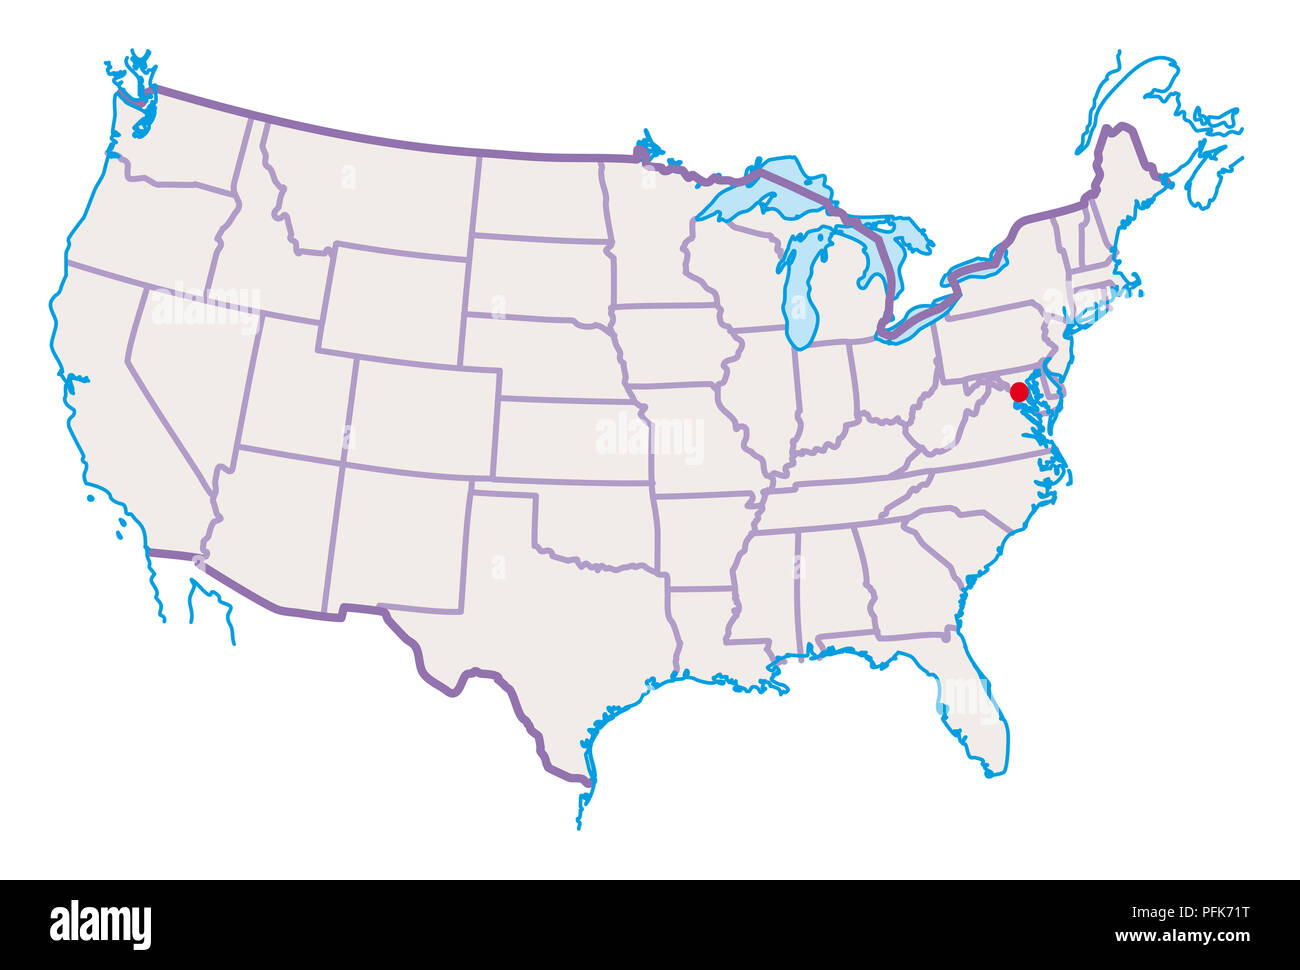 Mappa di Stati Uniti d'America, Washington D.C. evidenziato in rosso Foto Stock